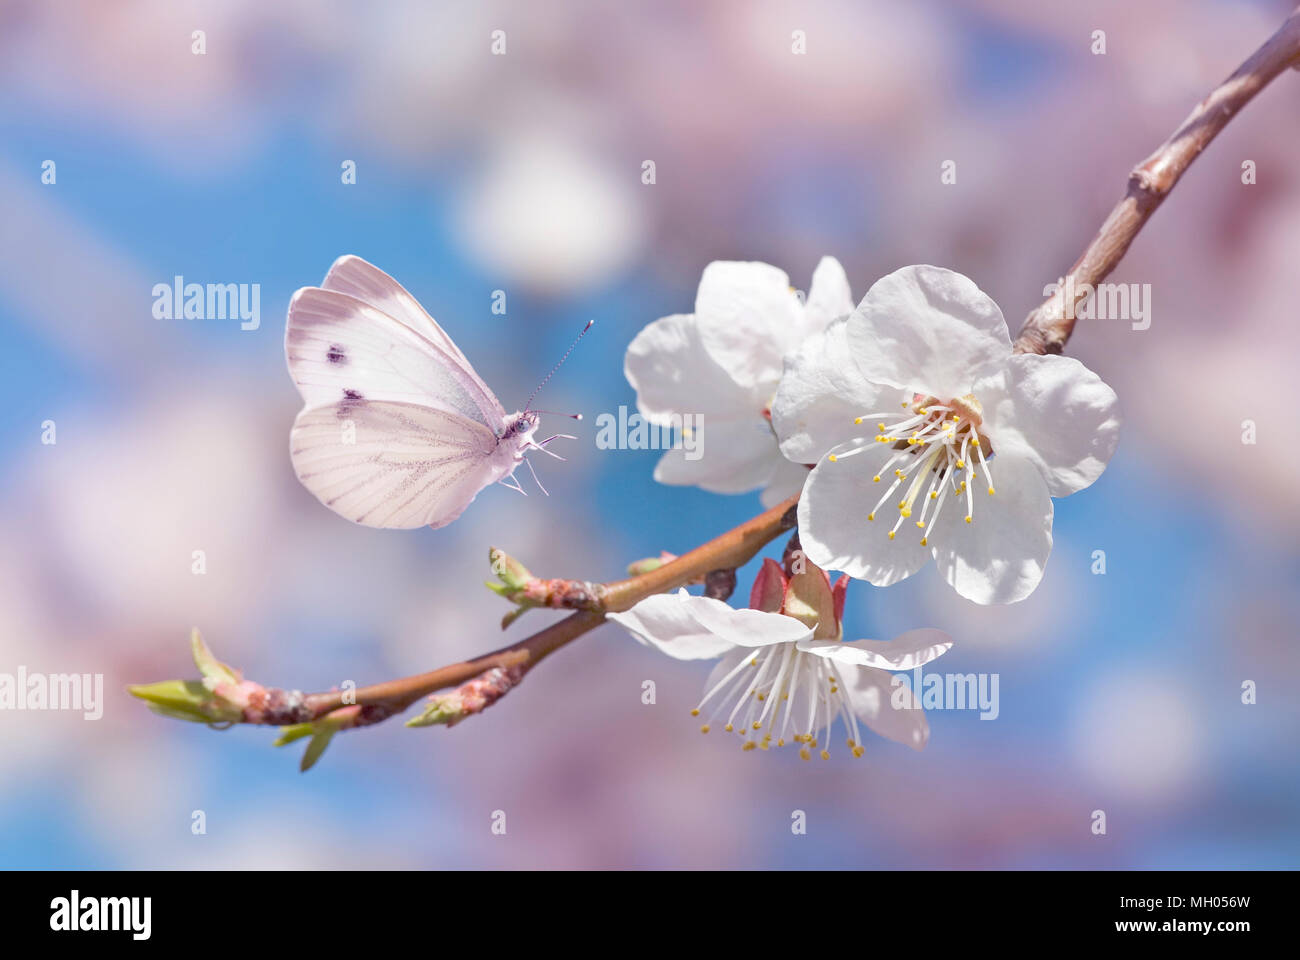 Schönen weißen Schmetterling und Zweig der blühenden Kirschbaum in der Feder auf blau und rosa Hintergrund close-up. Erstaunlich elegante Bild der Natur in der frühen spr Stockfoto